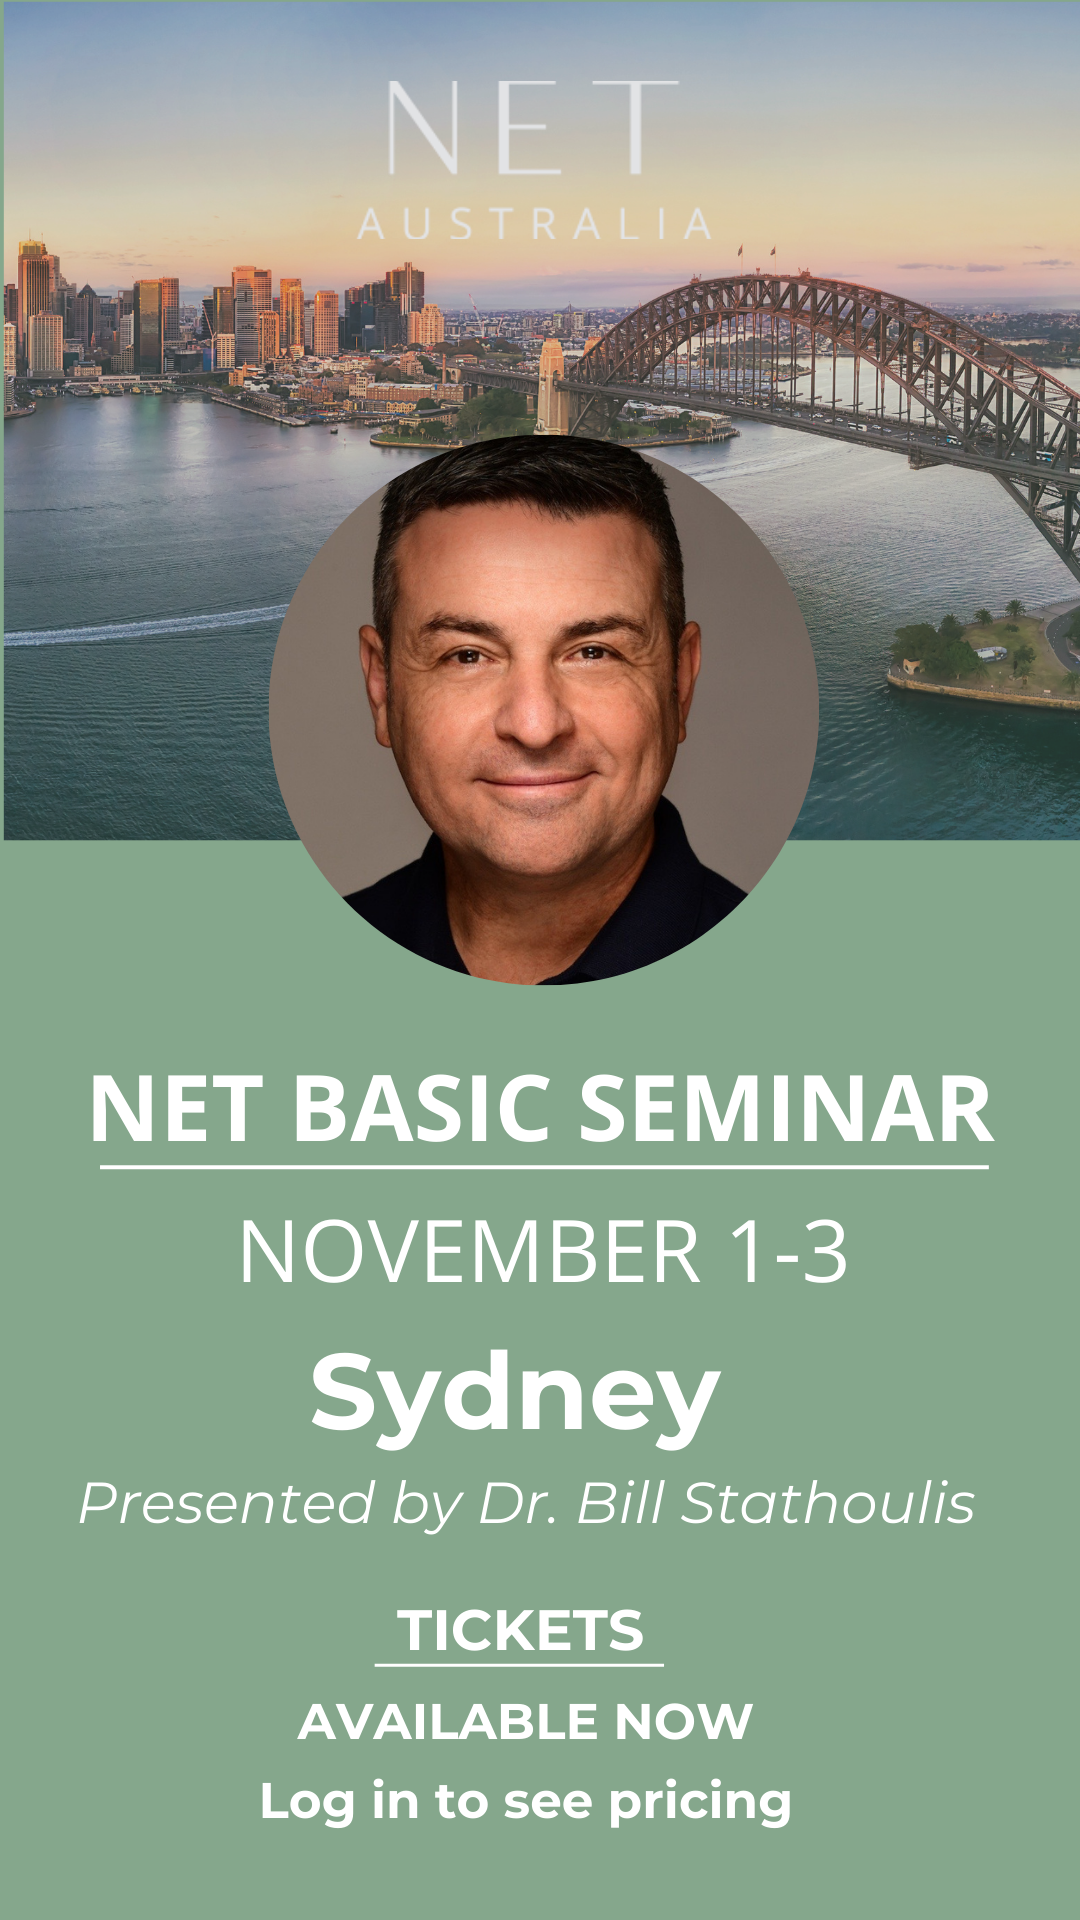 Seminar: NET Basic SYDNEY